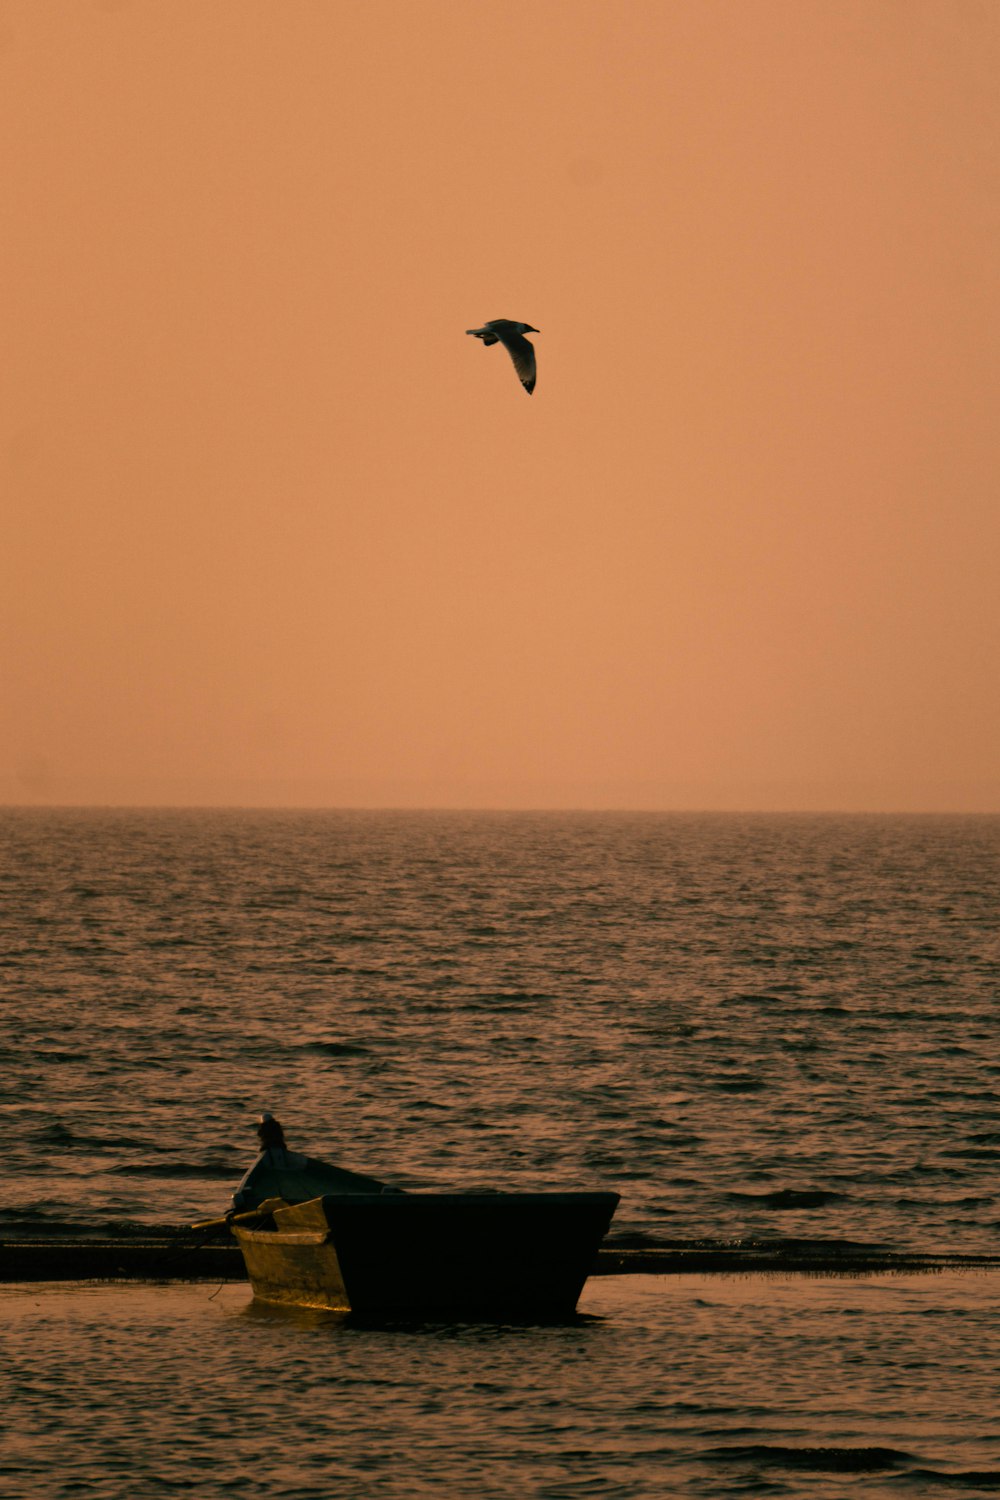 a bird flies over a boat